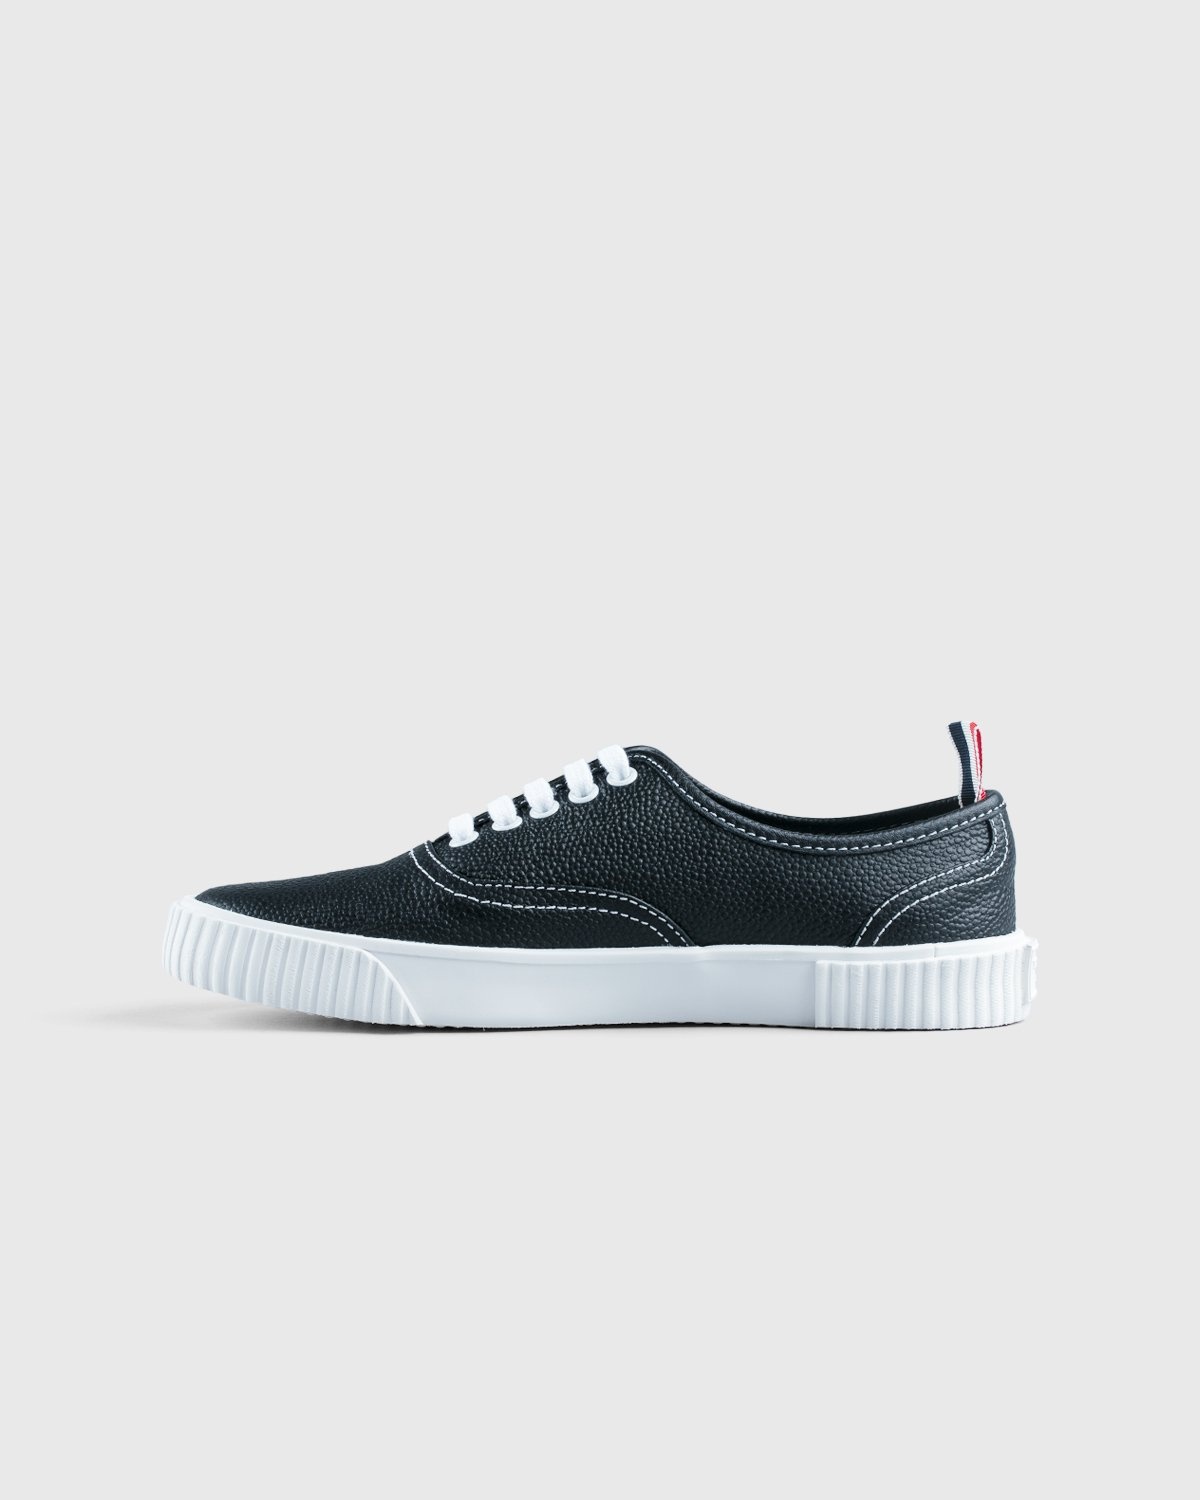 Thom Browne x Highsnobiety – Women's Heritage Sneaker Grey - Low Top Sneakers - Grey - Image 7